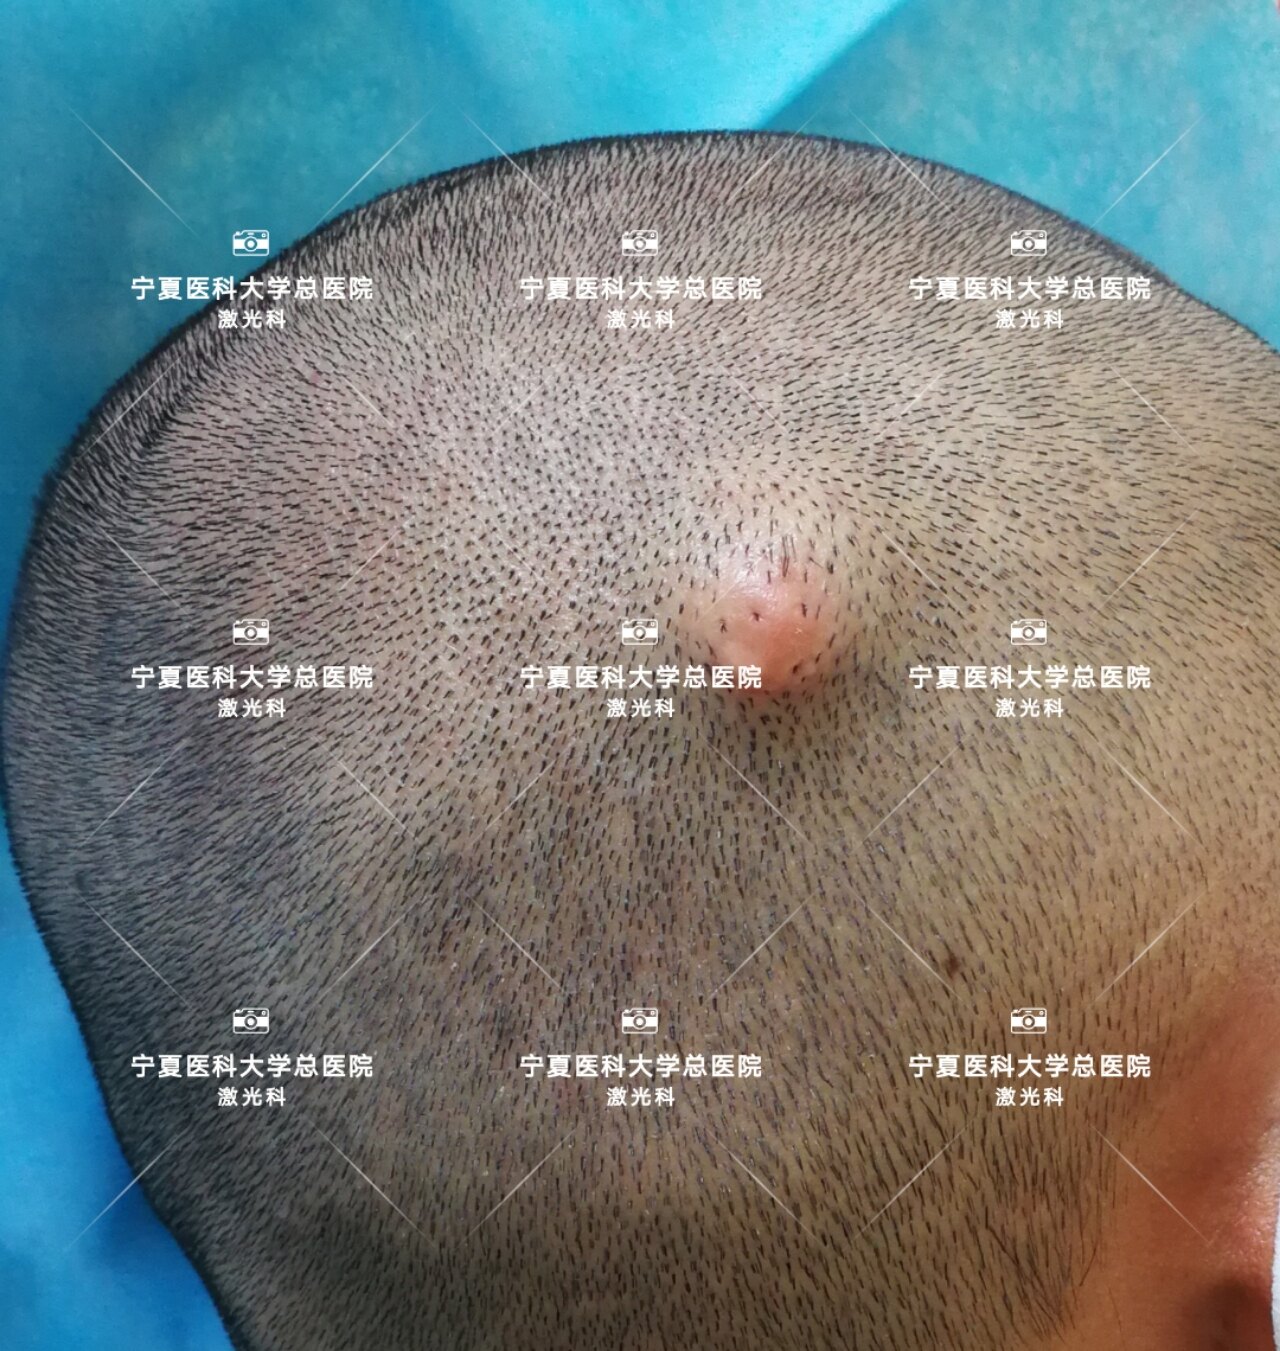 头皮肿物切除术步骤图片